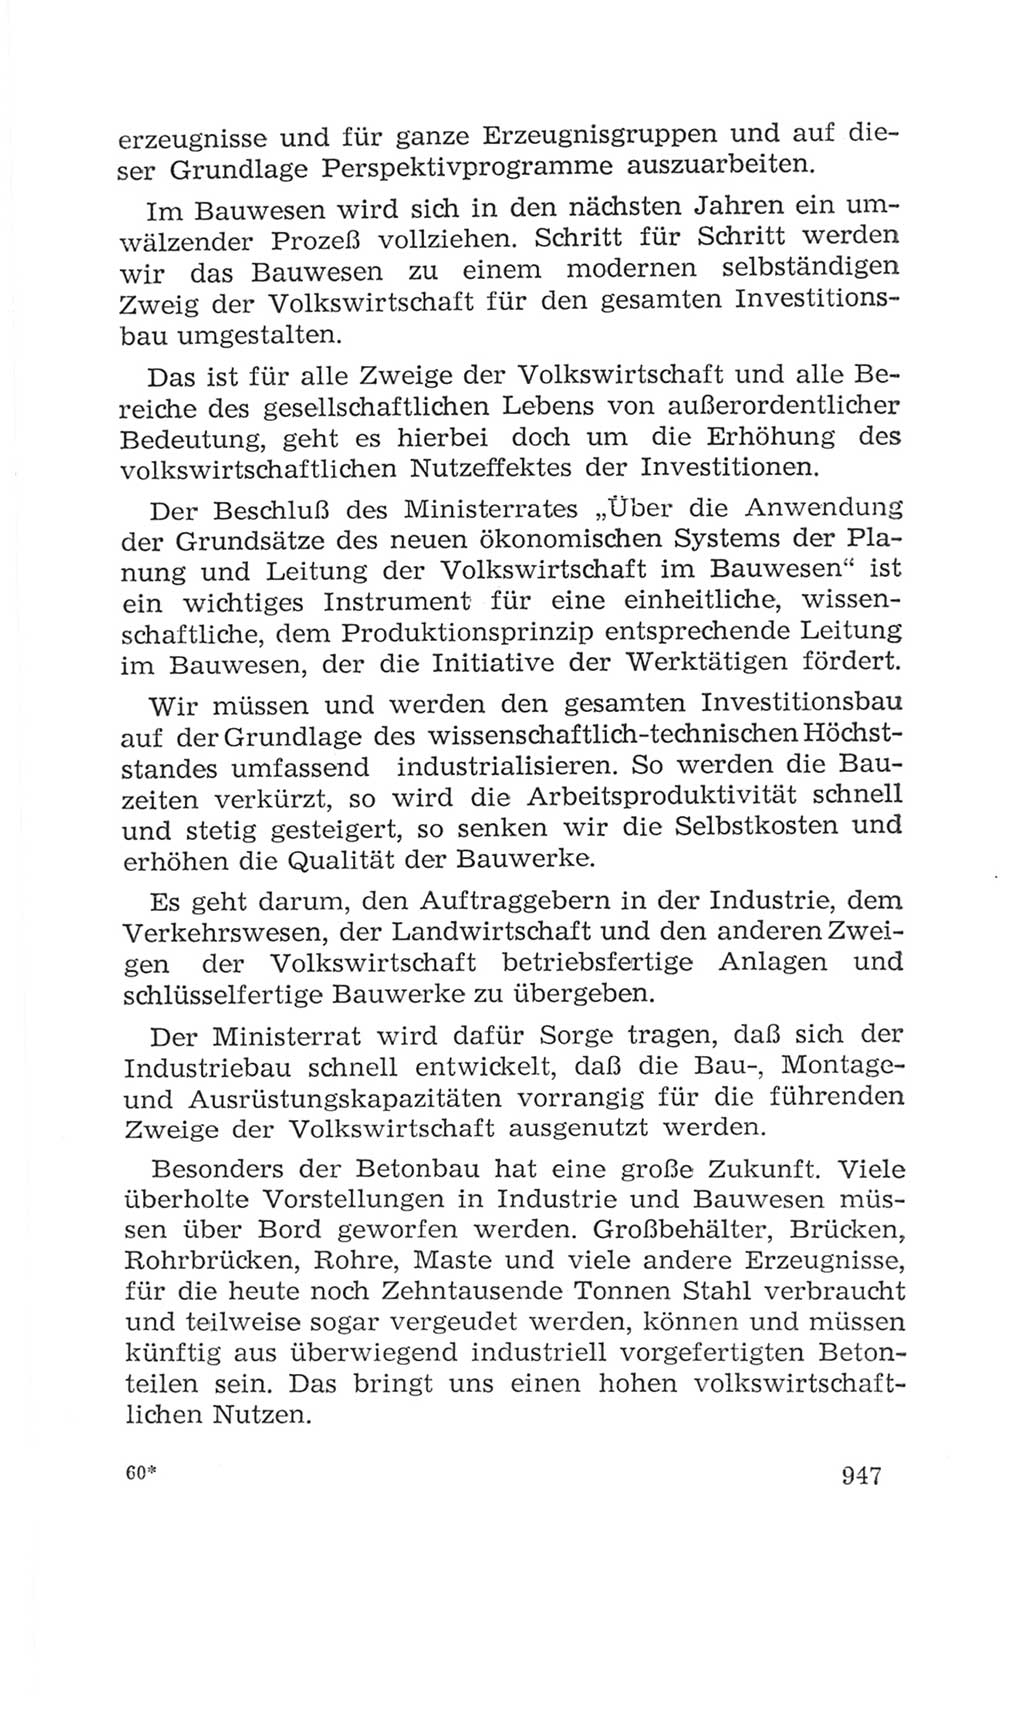 Volkskammer (VK) der Deutschen Demokratischen Republik (DDR), 4. Wahlperiode 1963-1967, Seite 947 (VK. DDR 4. WP. 1963-1967, S. 947)